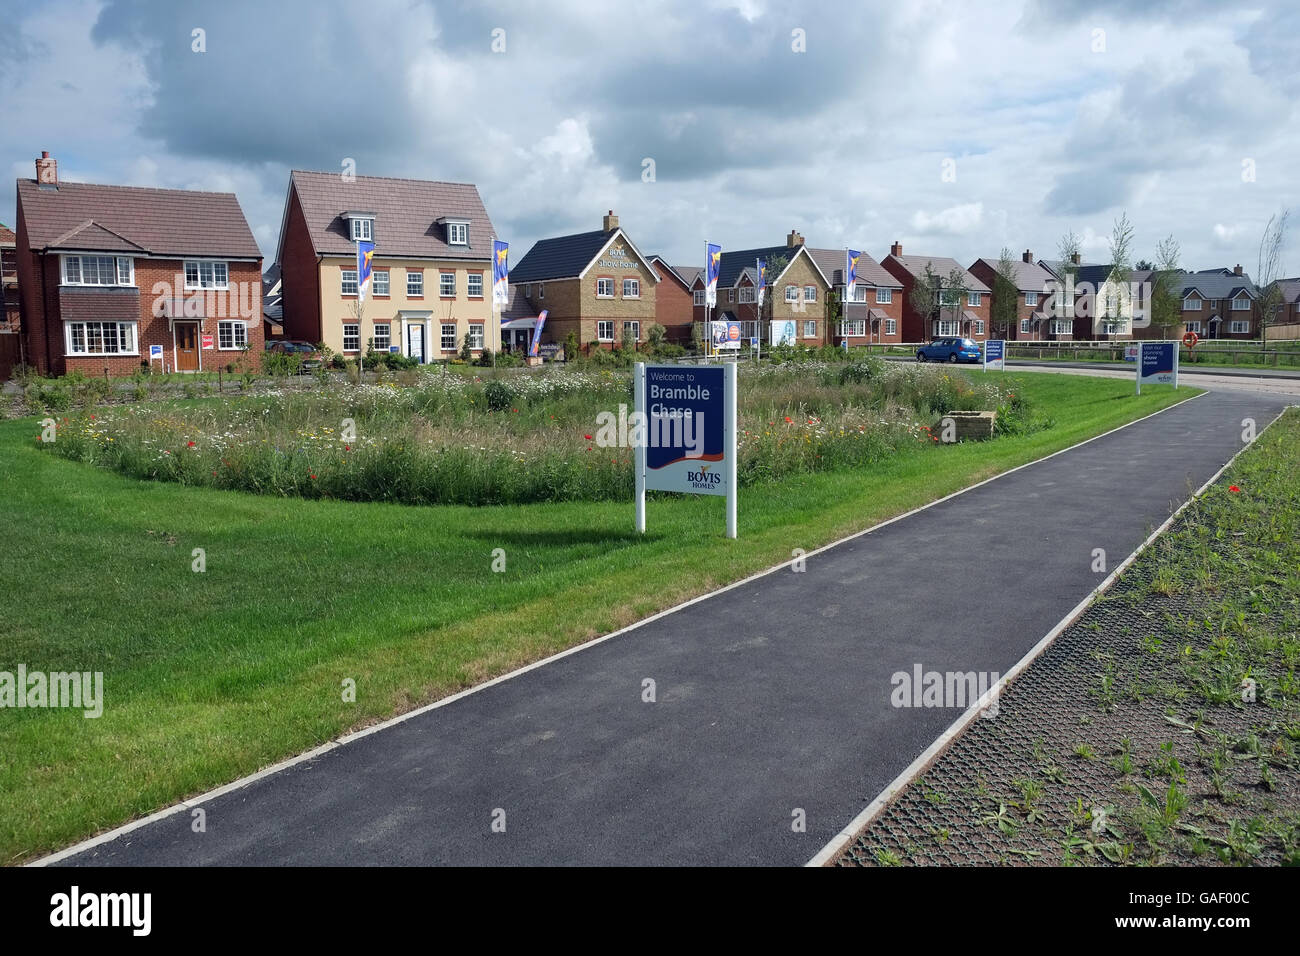 Bovis Homes Wohnsiedlung 'Bramble Chase' in Honeybourne, in der Nähe von Evesham, Worcestershire, England, Großbritannien Stockfoto